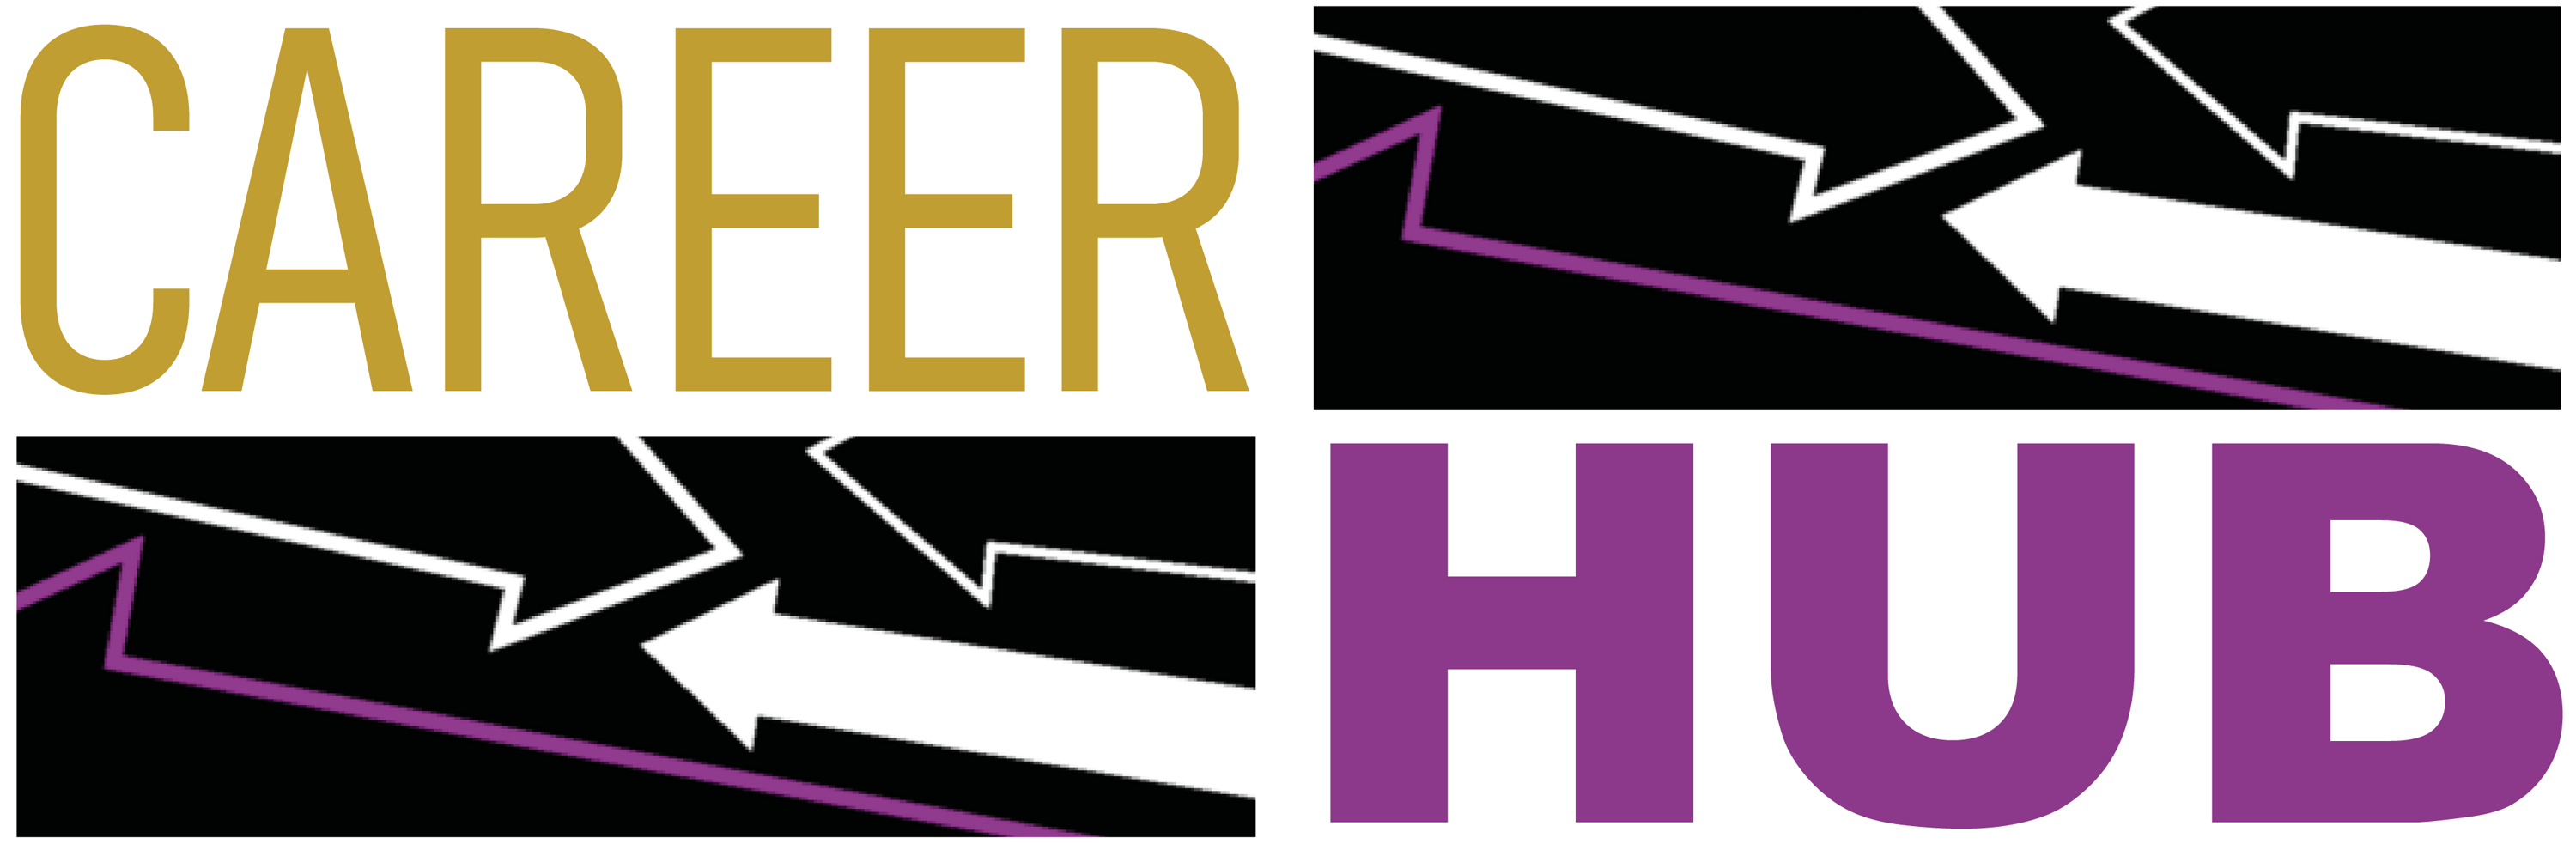 Career hub logo (002)